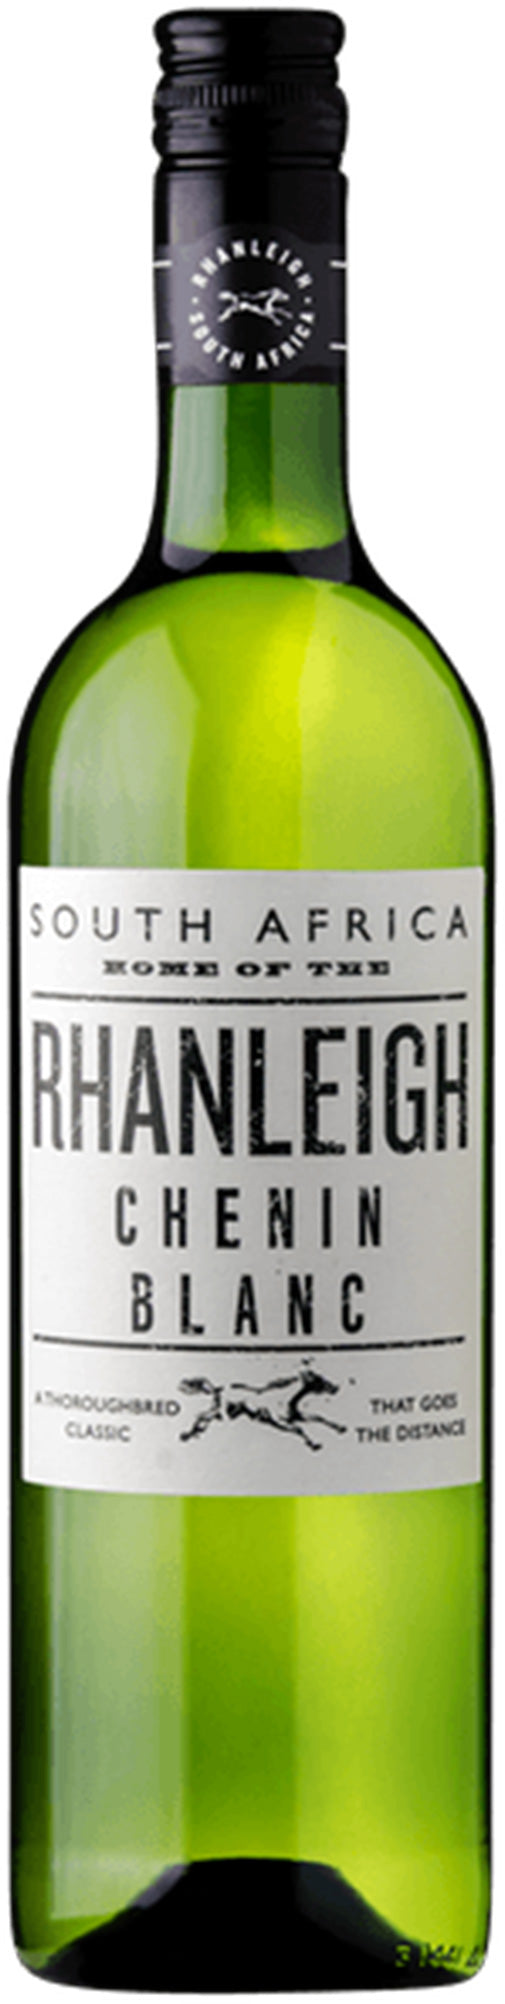 Rhanleigh Chenin Blanc 2020